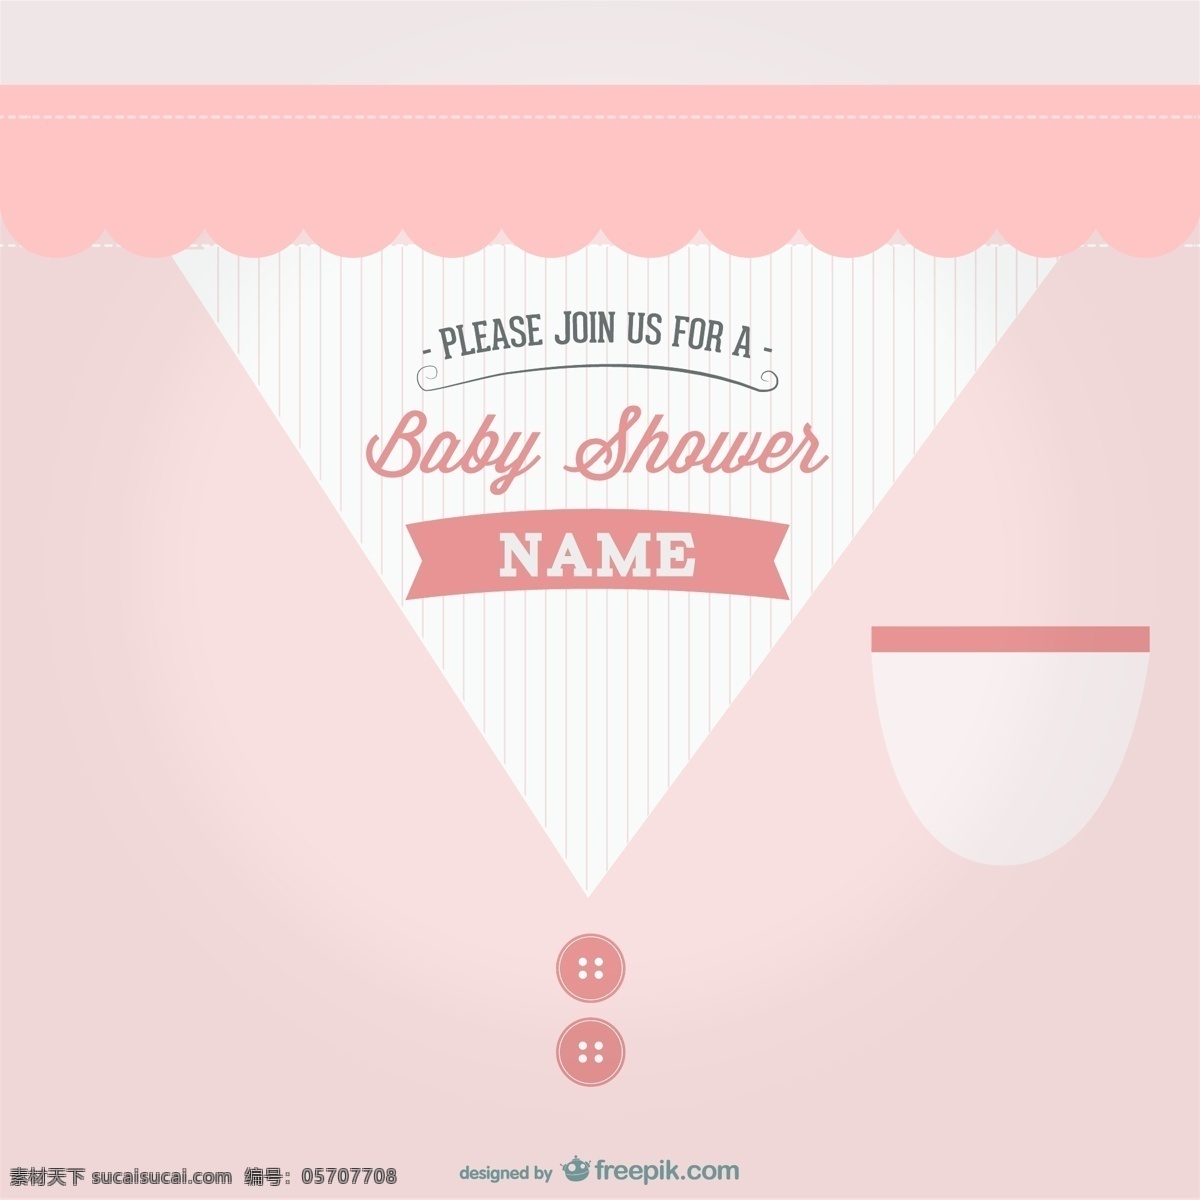 婴儿 淋浴 派对 卡片 时尚 婴儿淋浴 模板 花边 粉红色 文字 布局 优雅 甜美 婴儿女孩 适合 信息 时尚女孩 新生儿 白色